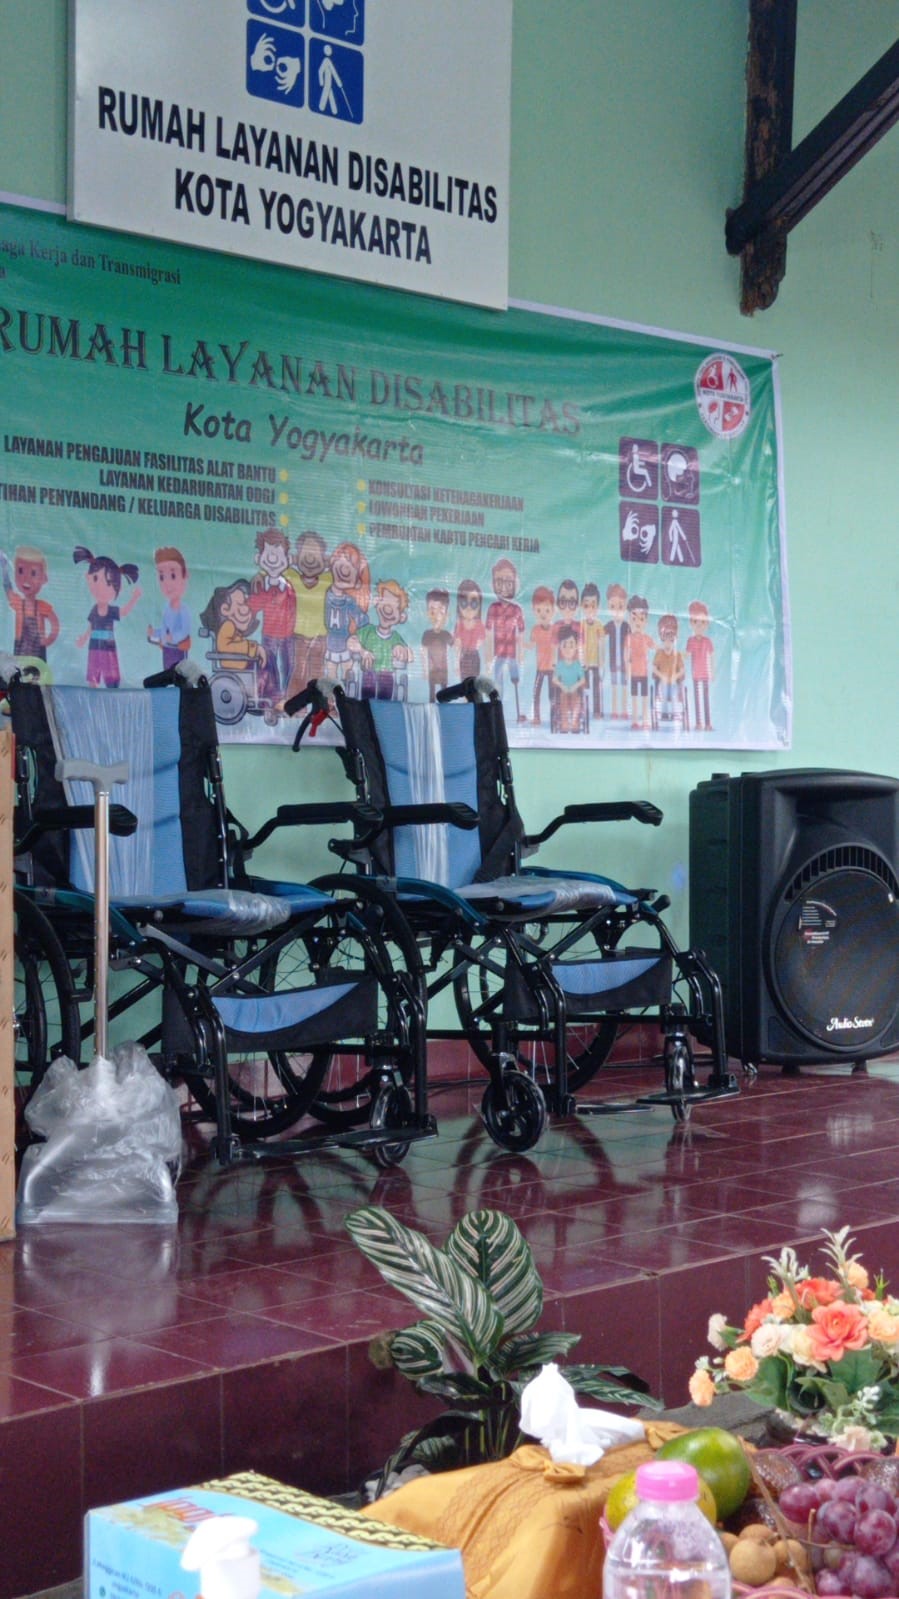 Dinas Sosial Tenaga Kerja dan Transmigrasi Kota Yogyakarta Hadirkan Rumah Layanan Disabilitas bagi Penyandang Disabilitas Kota Yogyakarta